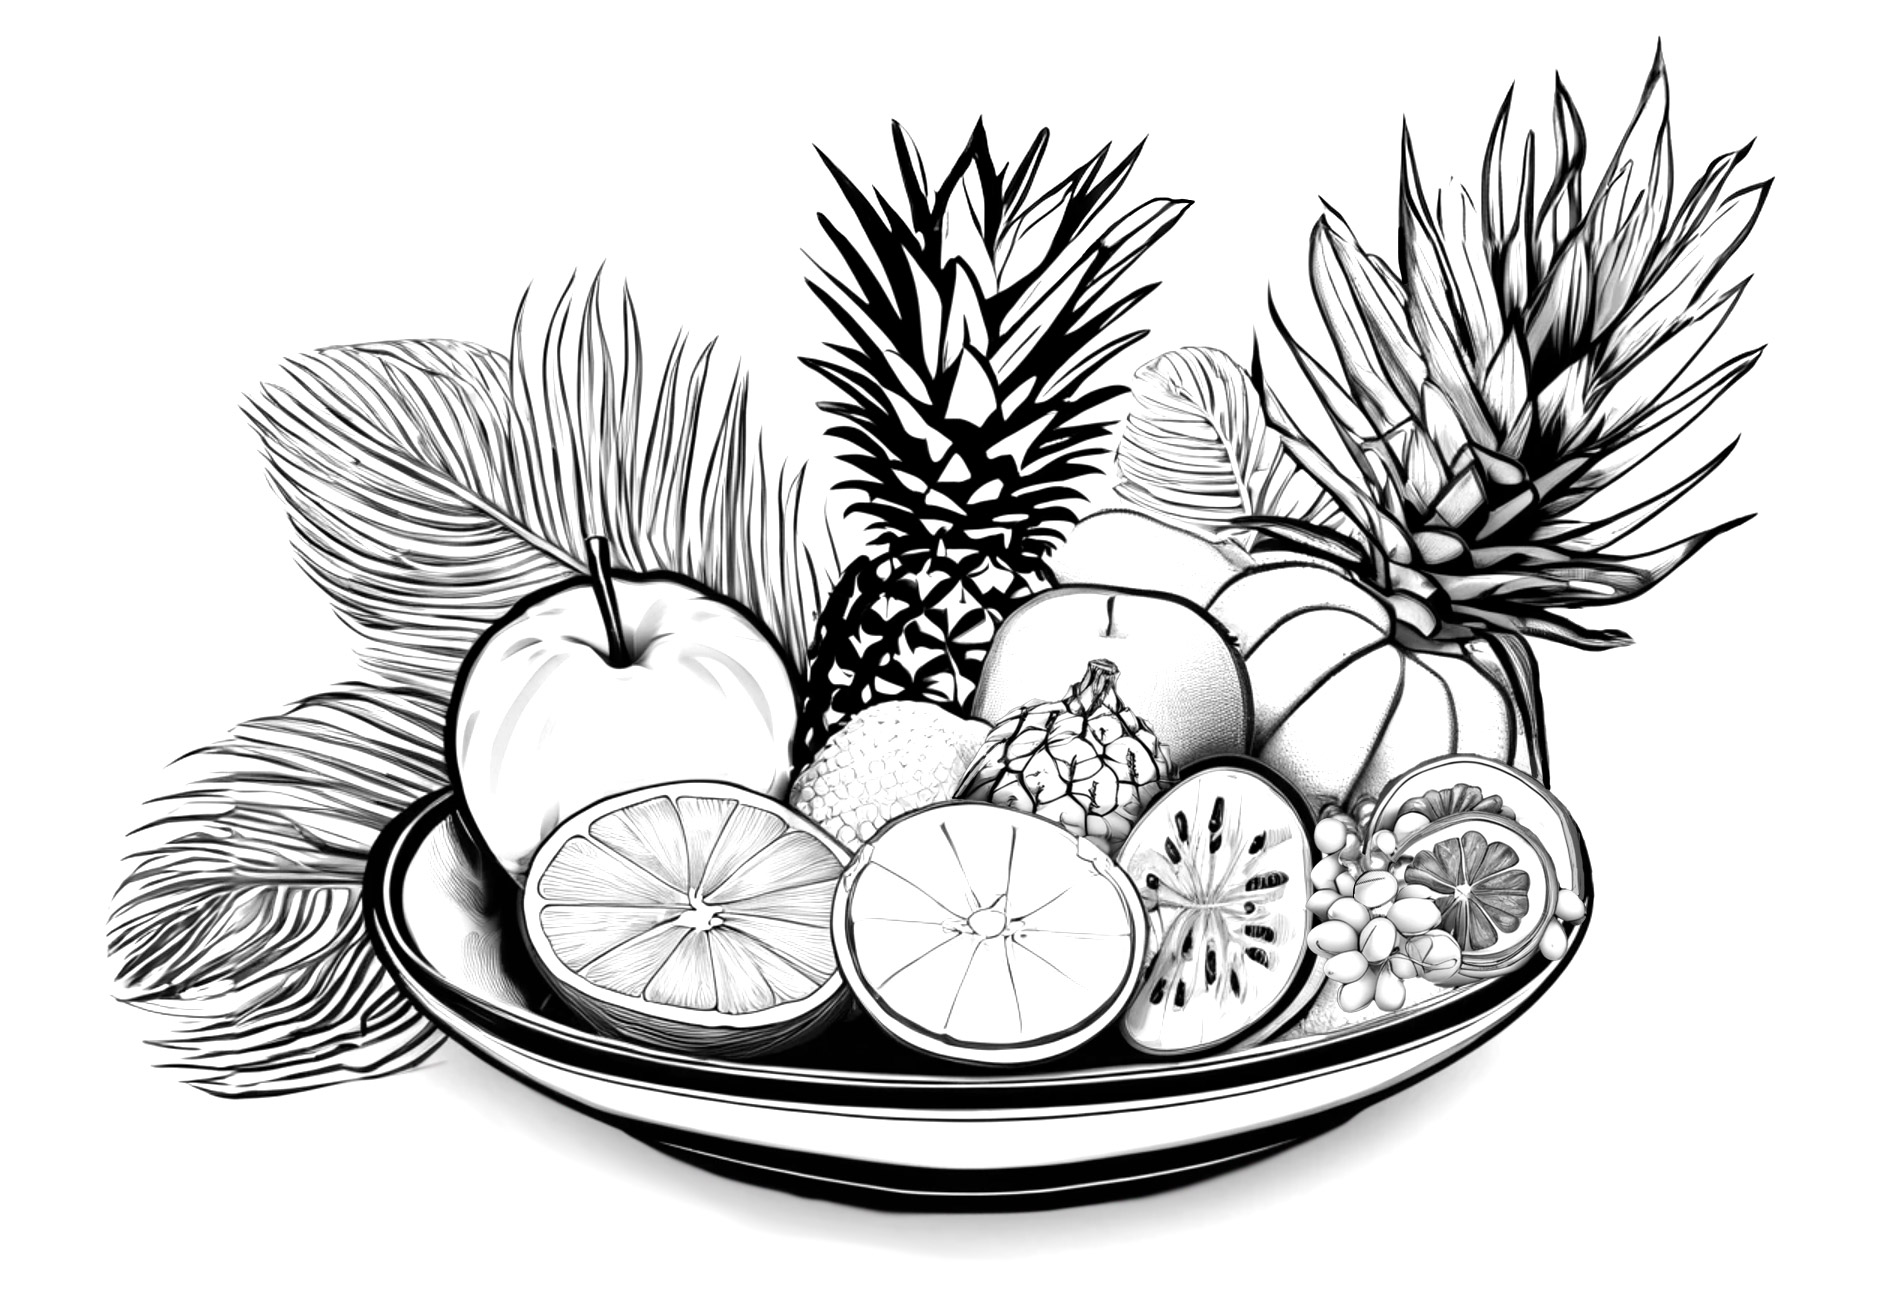 Ilustración de frutas tropicales, bodegón de frutas en una bandeja